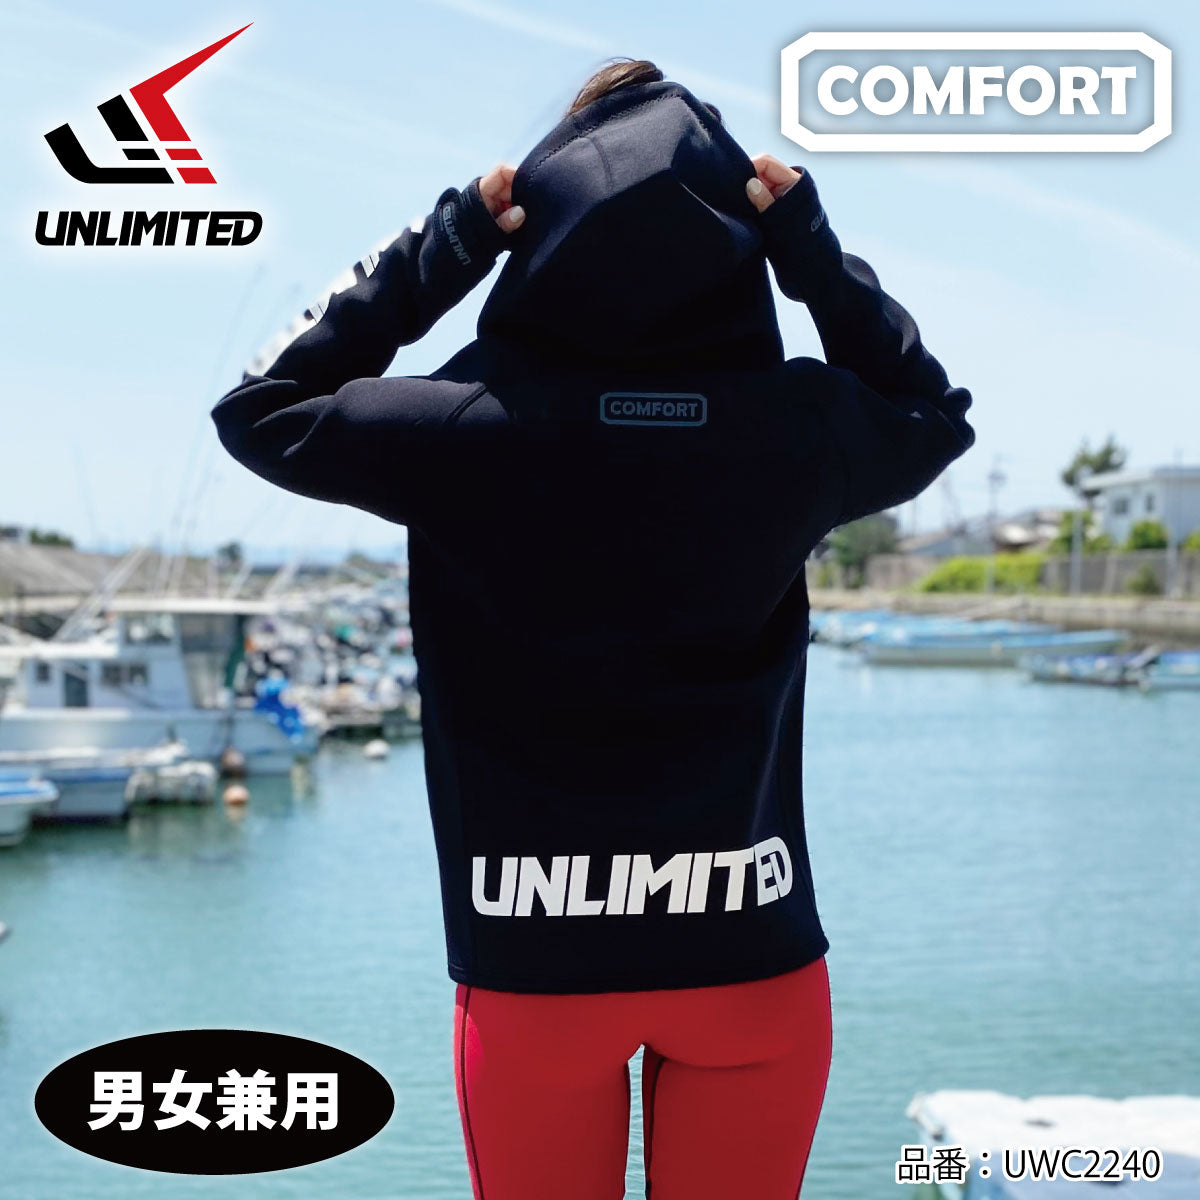 UNLIMITED COMFORT エクスペディションコート マリンコート  メンズ ウエット素材 ネオプレン 水上バイク マリンスポーツ アウトドア UWC2240